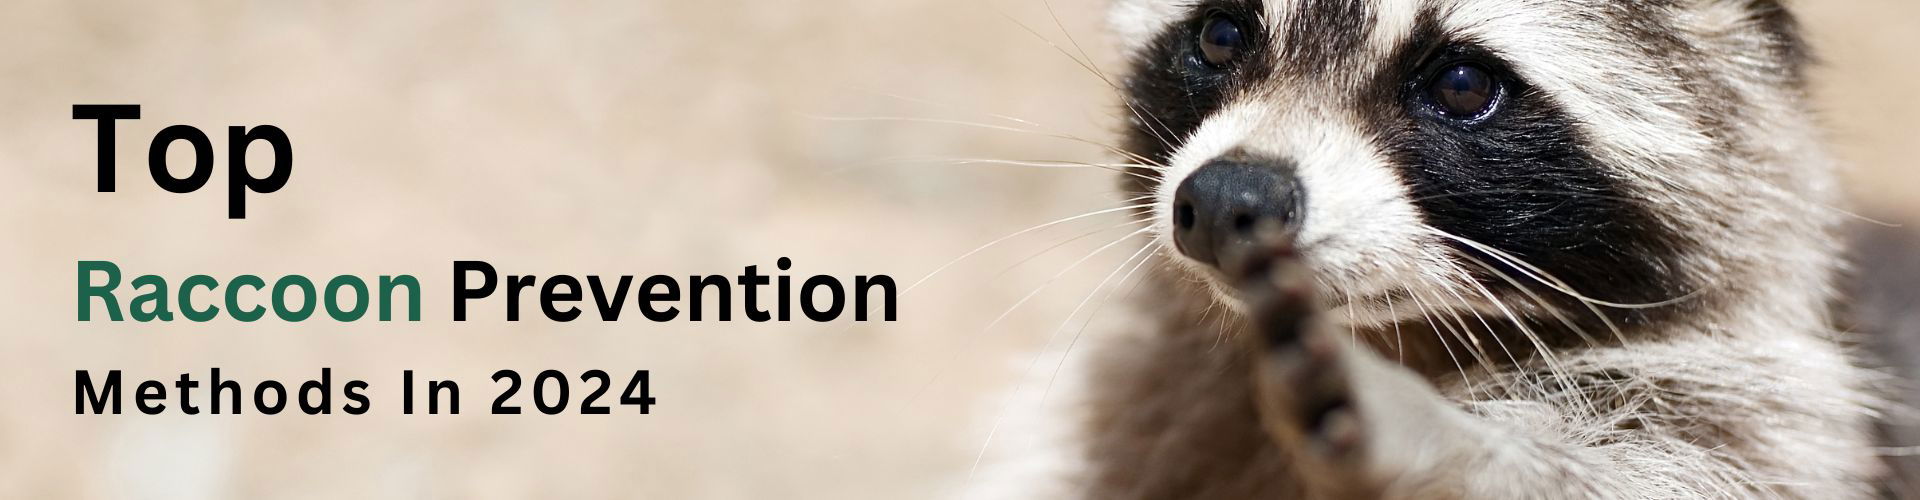 Top 4 Raccoon Prevention Methods 2024